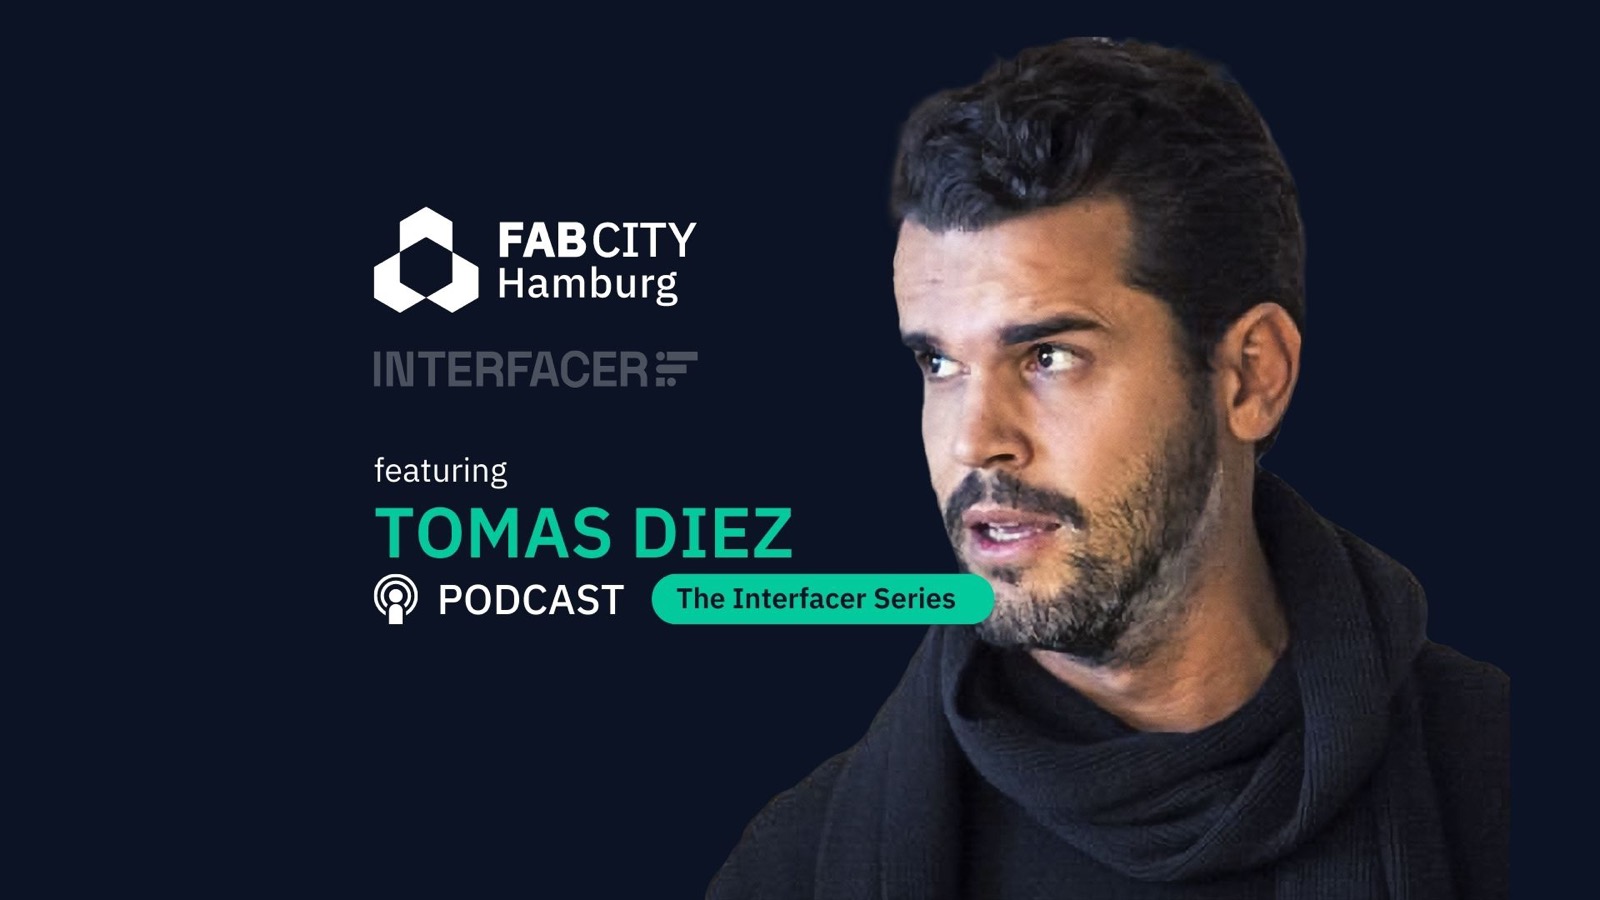 Tomas Diez auf einem dunklen Hintergrund. Das FabCity und Interfacer Logo sind zu sehen.